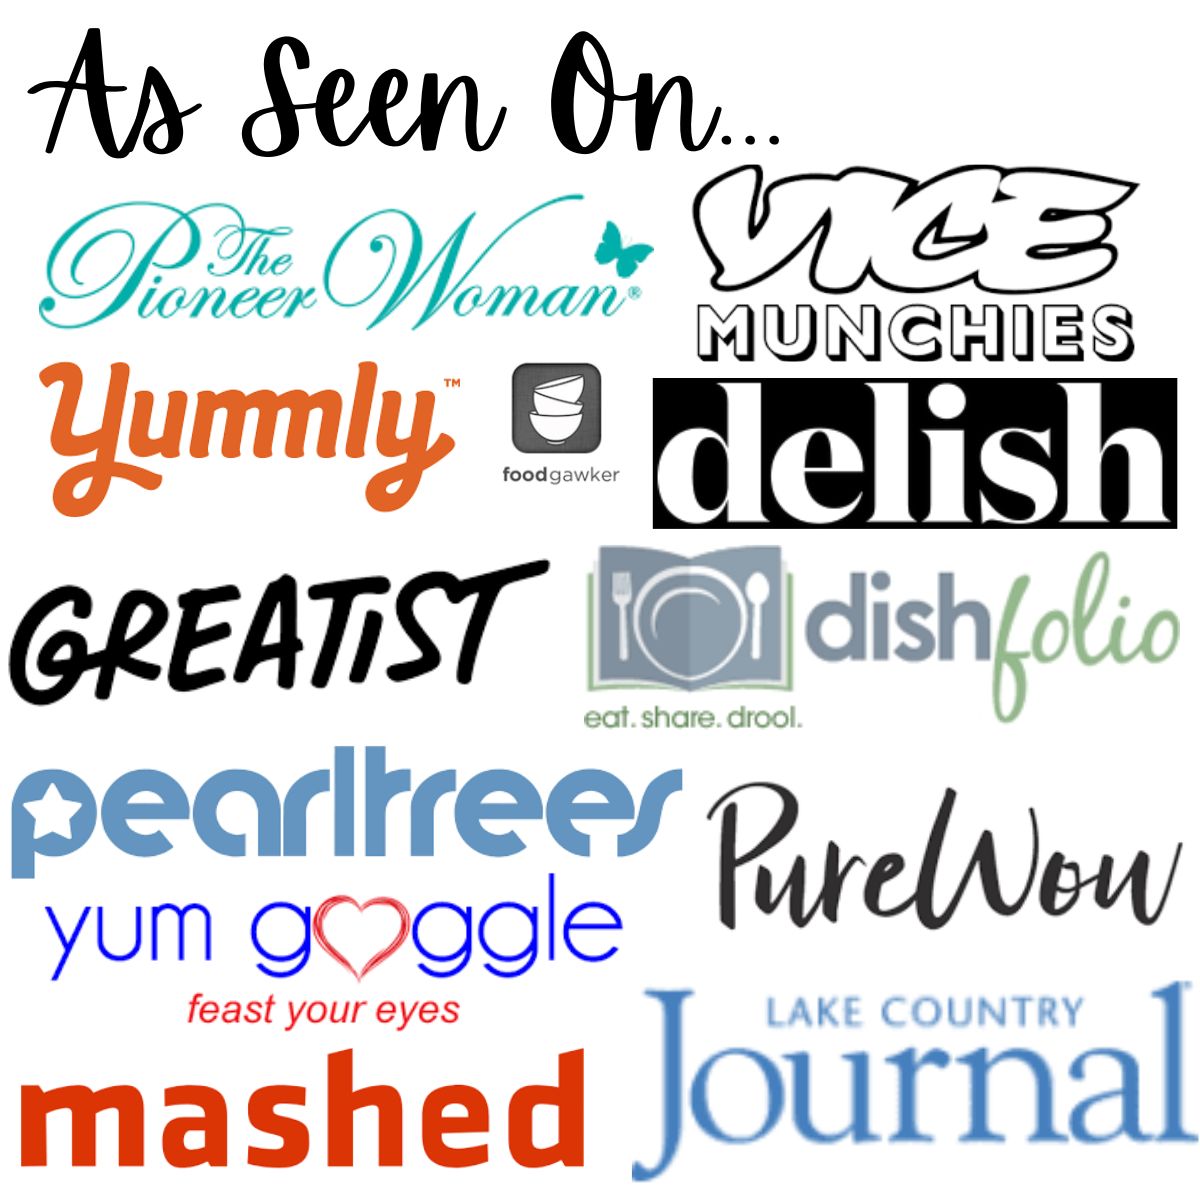 Som set på blok med logoer fra firmaerne Angela har arbejdet med, herunder Mashed, Vice Munchies, Lake Country Journal, Delish, Yummly og mere.